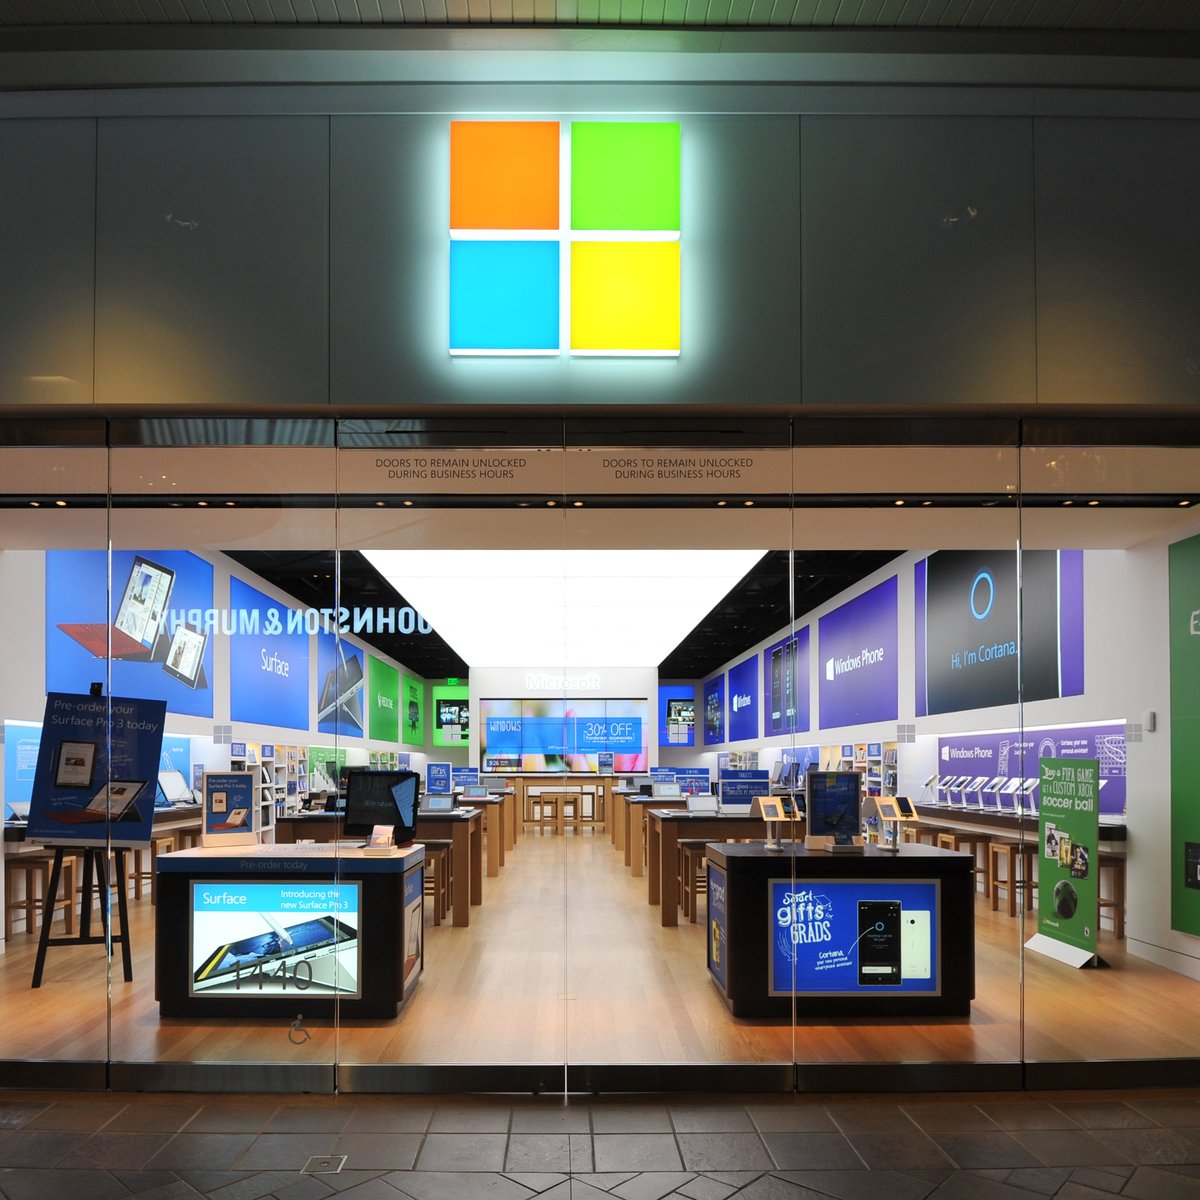 Get Show do Milhão 2 - Microsoft Store